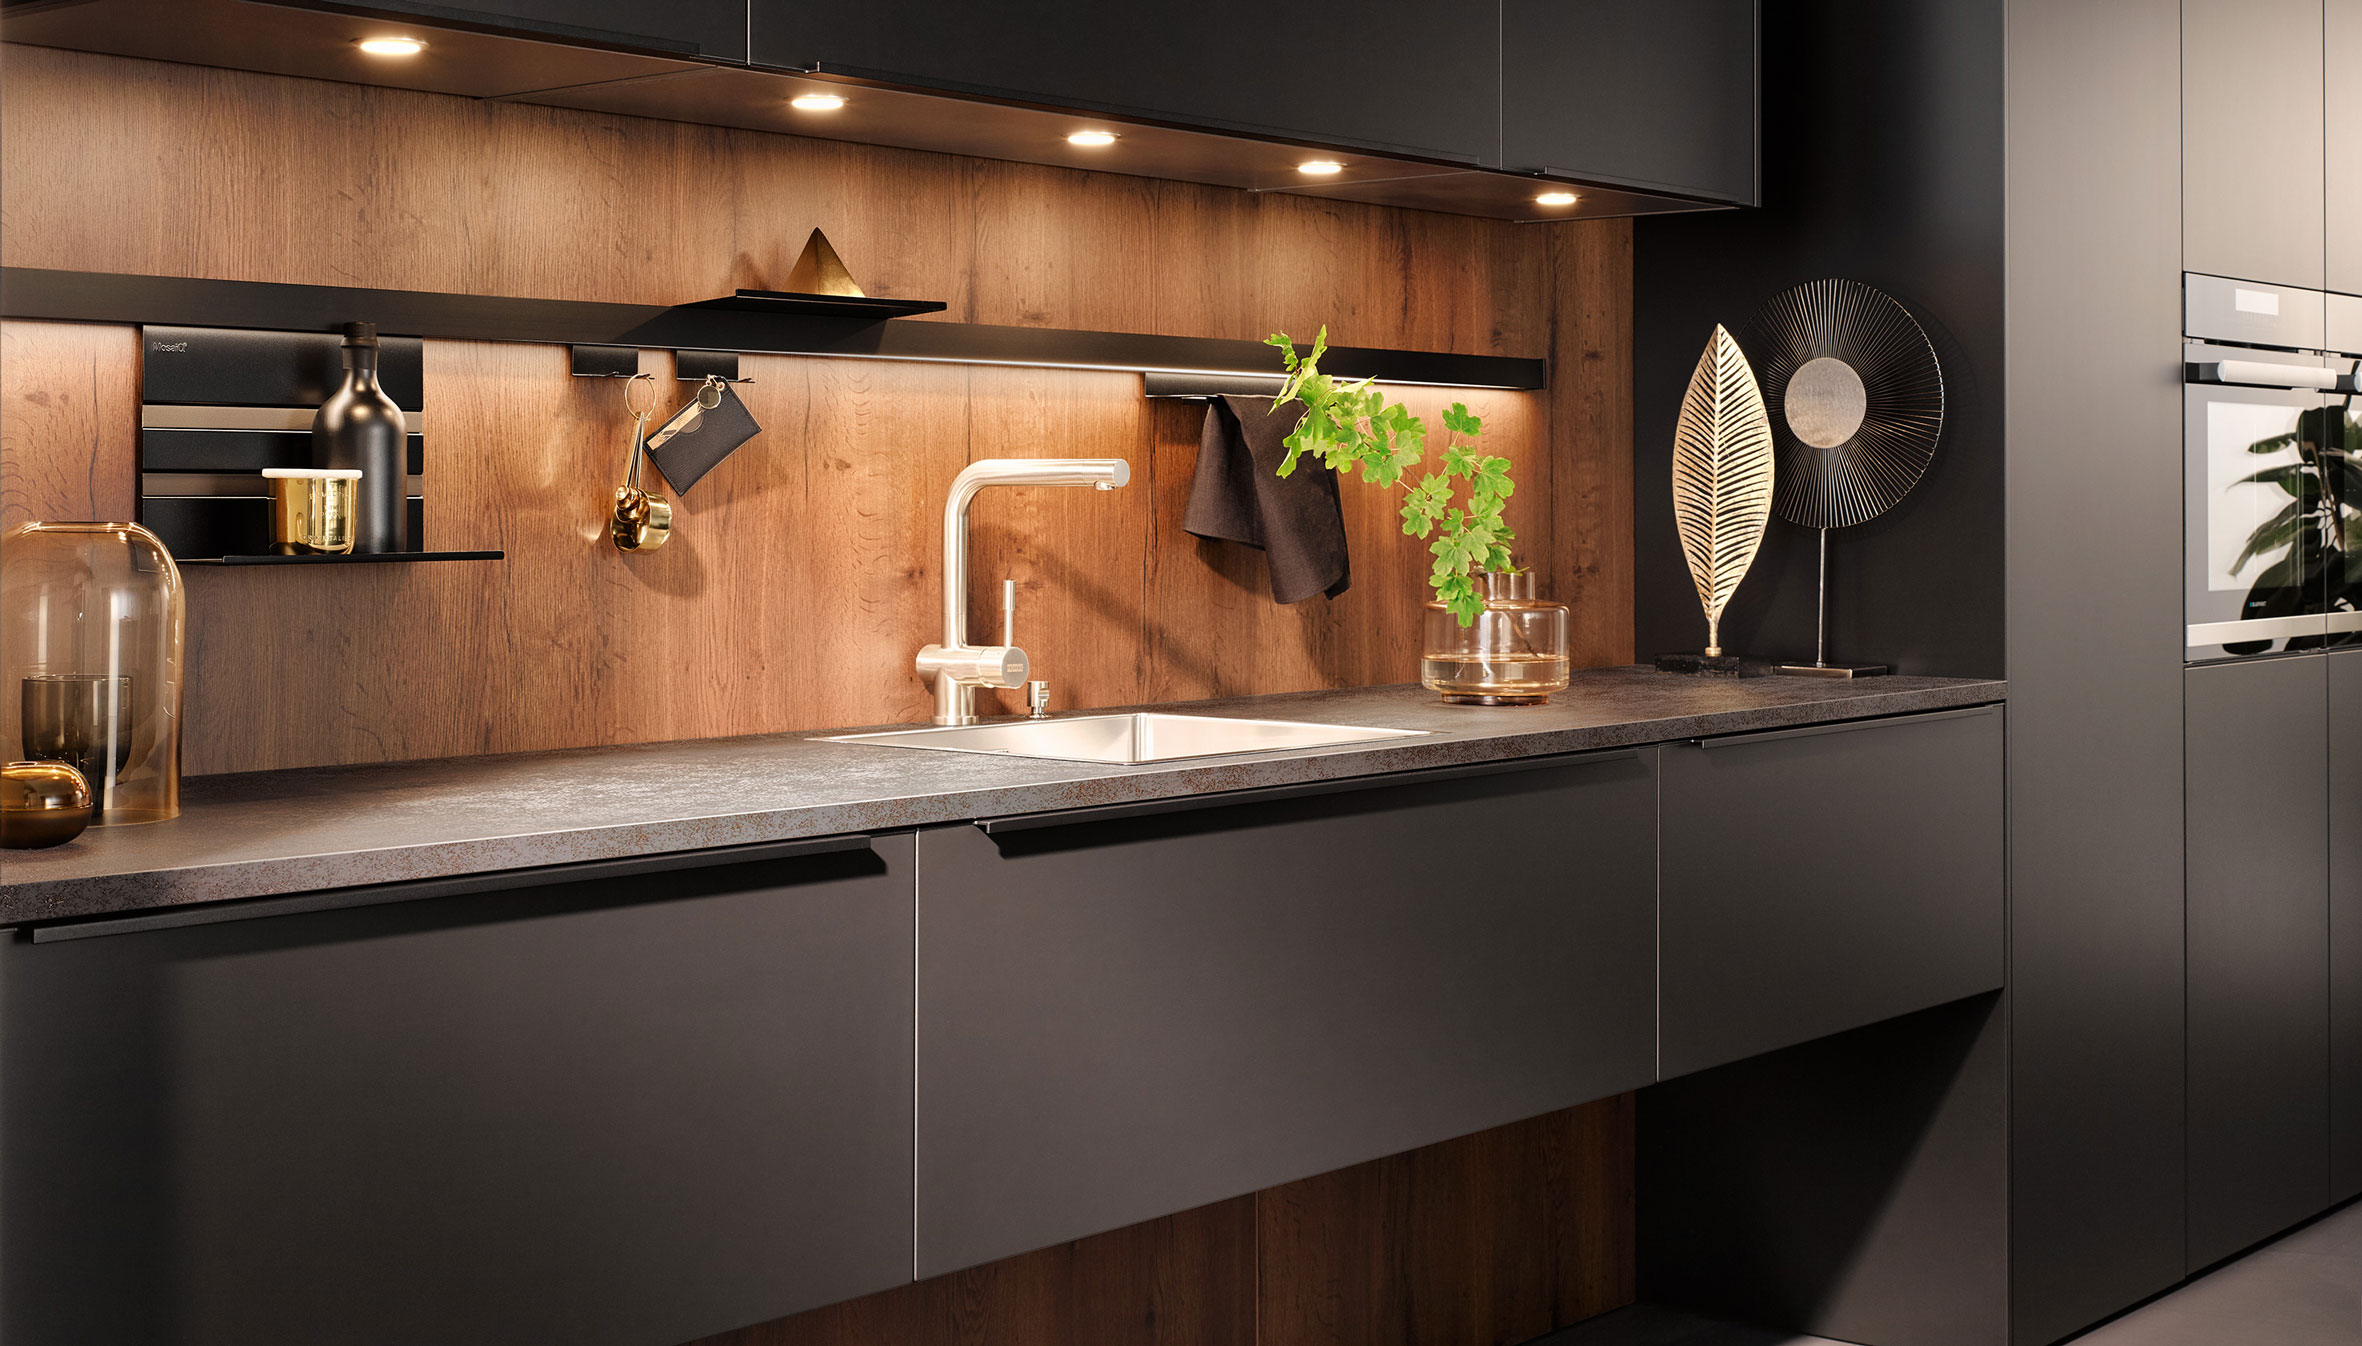 Om toevlucht te zoeken Ham Amfibisch Leuke ideeën voor een stijlvolle keukenwand | Satink Keukens